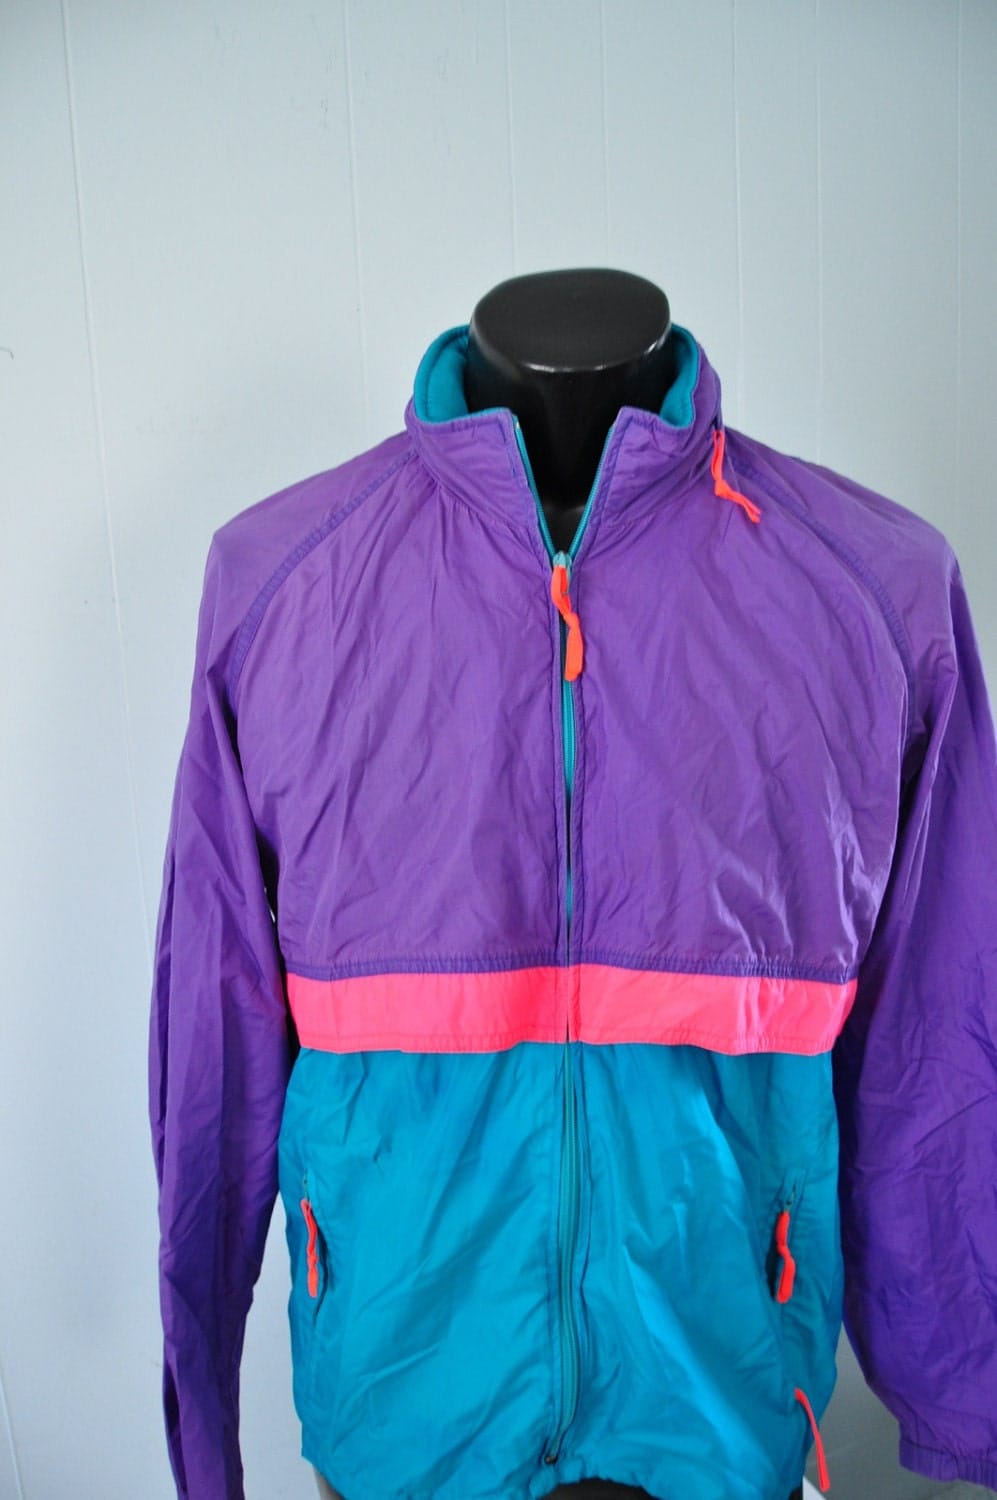 Vintage Neon Windbreaker by Woolrich Track Jacket Purple Pink